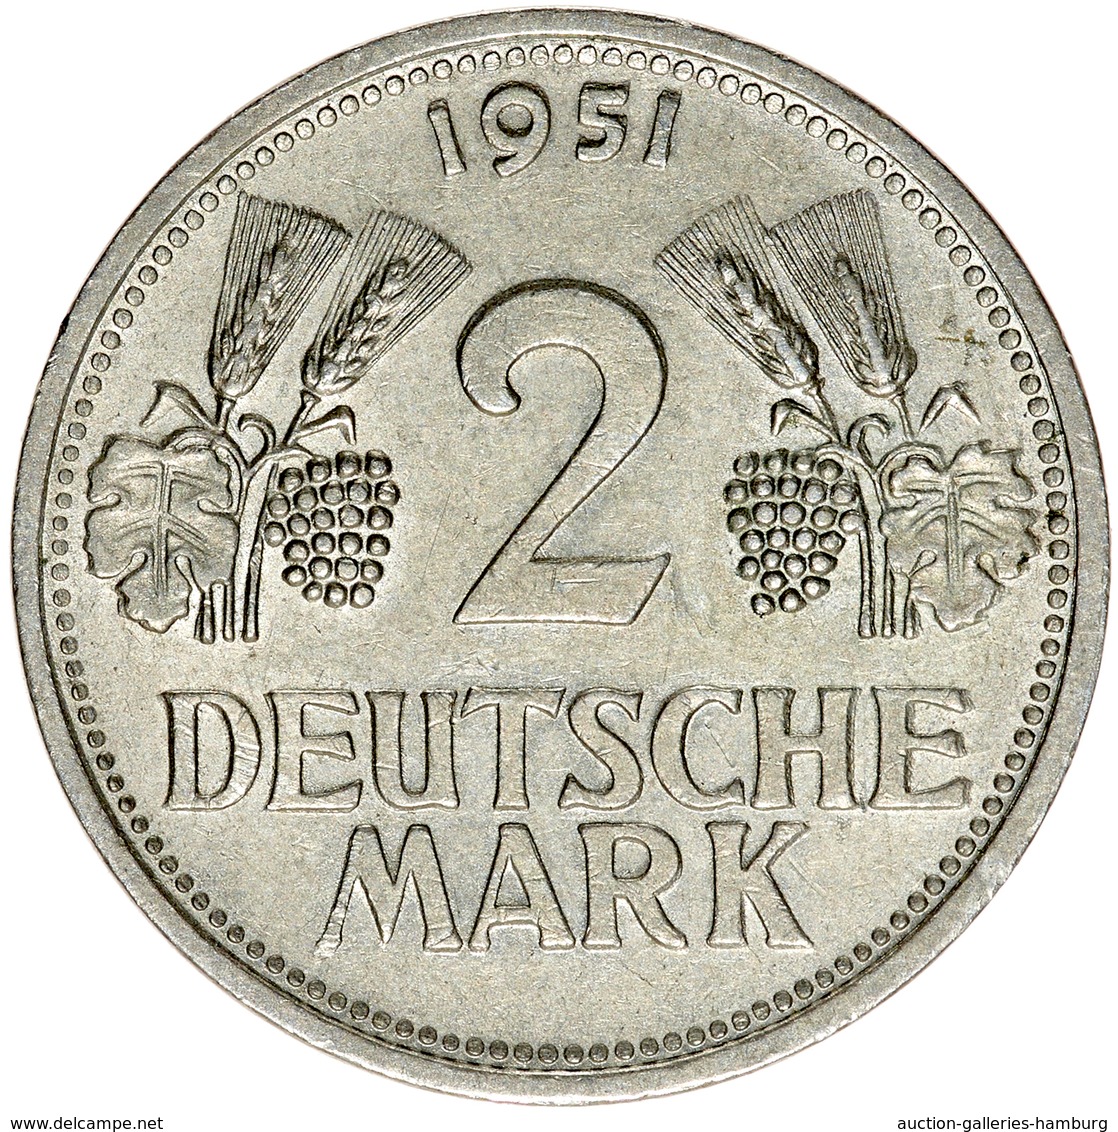 Bundesrepublik Deutschland 1948-2001: 1951, 2 Mark Kursmünze aus den Prägestätten D, F, G und J. Die